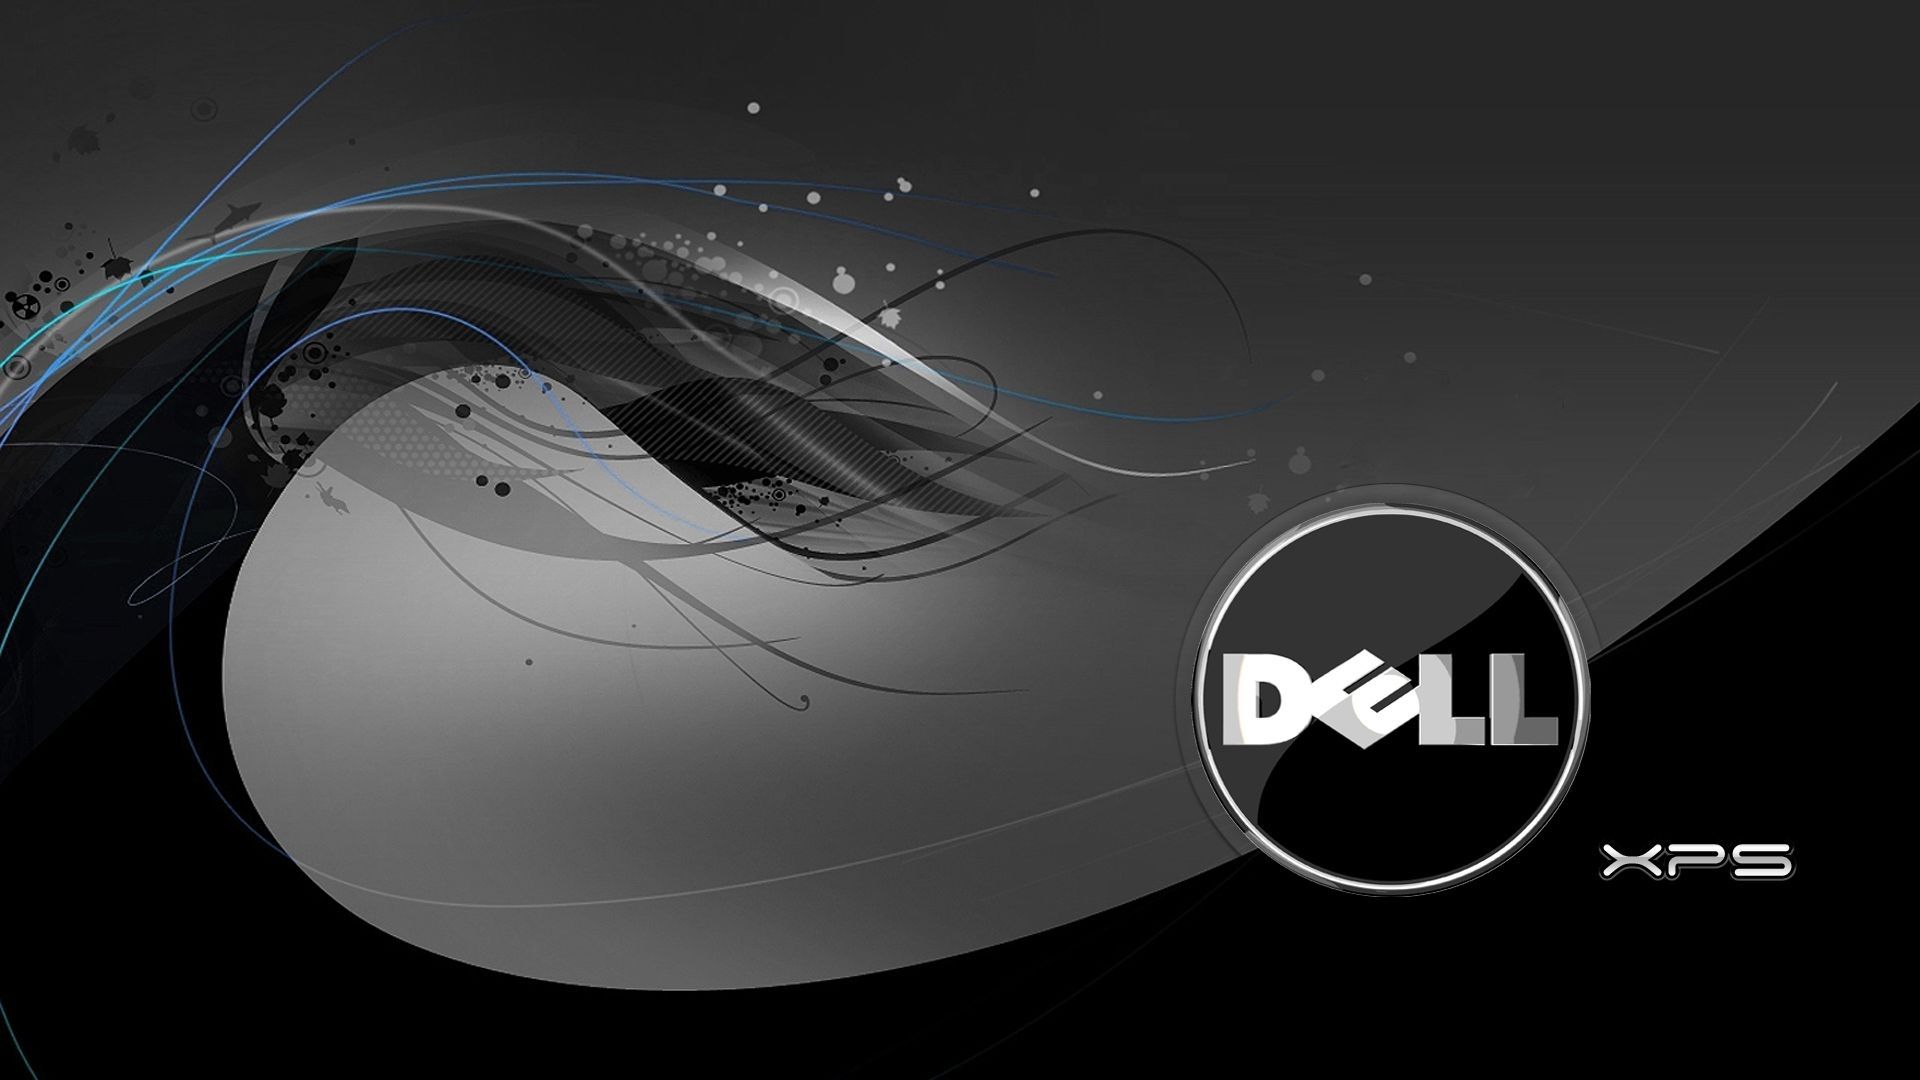 Most Popular Wallpaper For Dell Desktop FULL HD 1920×1080 For PC Backgroundk wallpaper for pc, Wallpaper pc, Abstract wallpaper